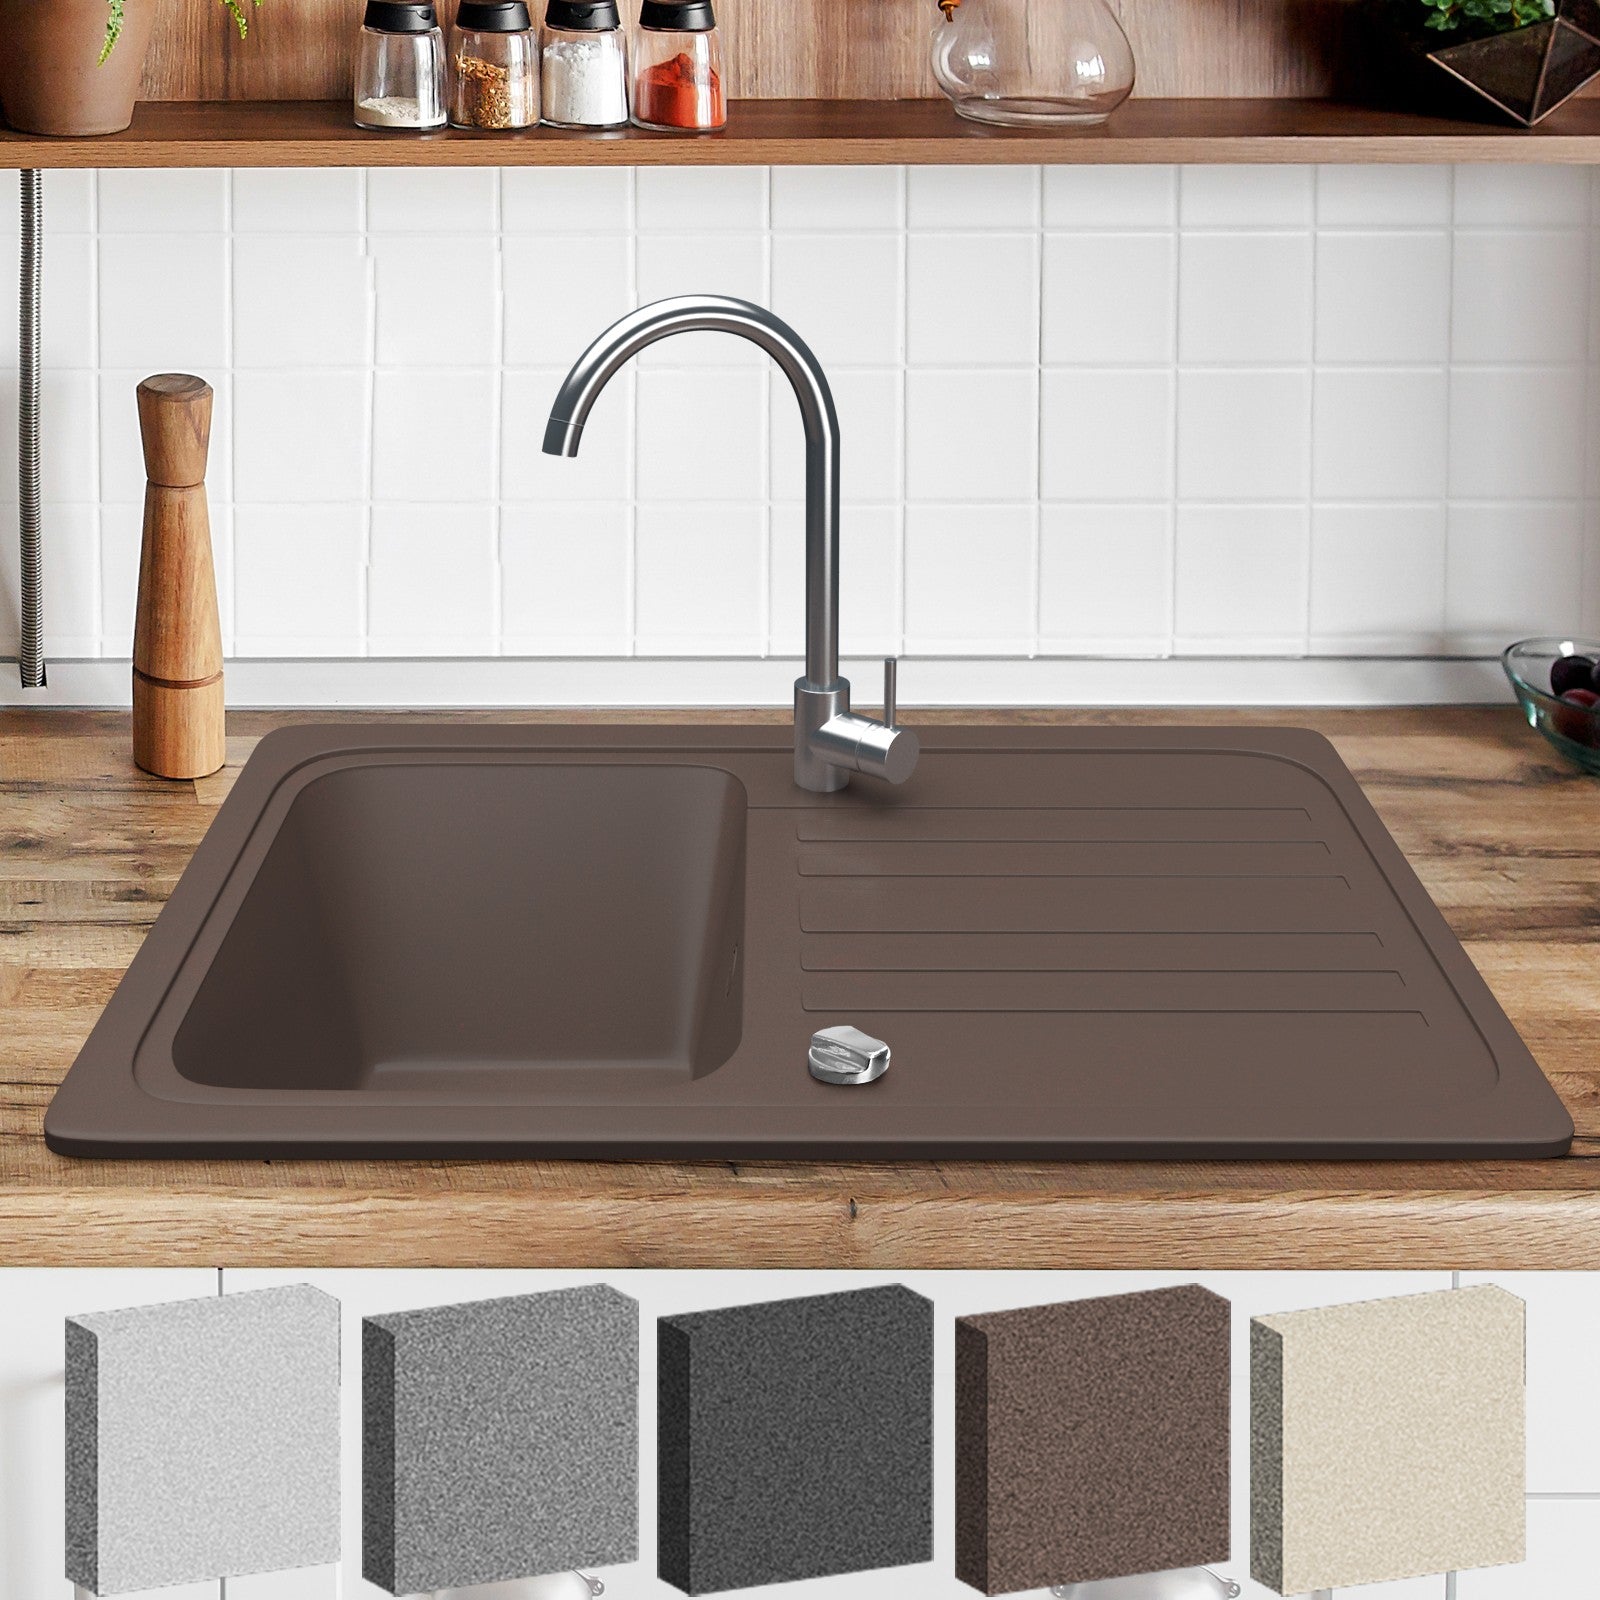 AquamarinÂ® vask - granit, sæt, ca. 30" x 18", med afløb, armatur i rustfrit stål, vendbar aftrækker, rektangulær, brun - indbygget vask, vask, kompositvask, køkkenvask